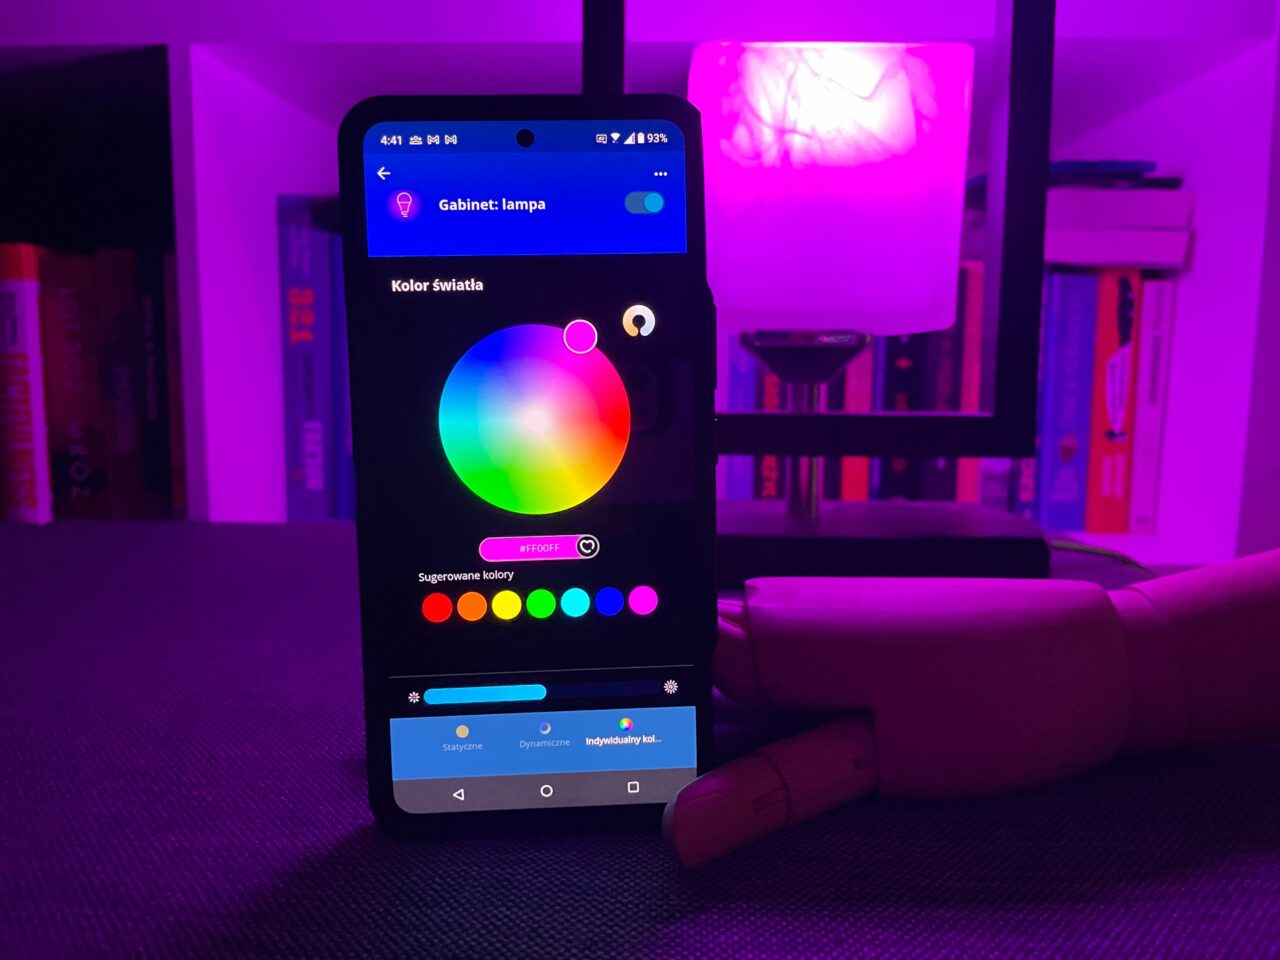 Smartfon wyświetlający aplikację do sterowania kolorowym oświetleniem w pomieszczeniu z fioletowym światłem w tle.